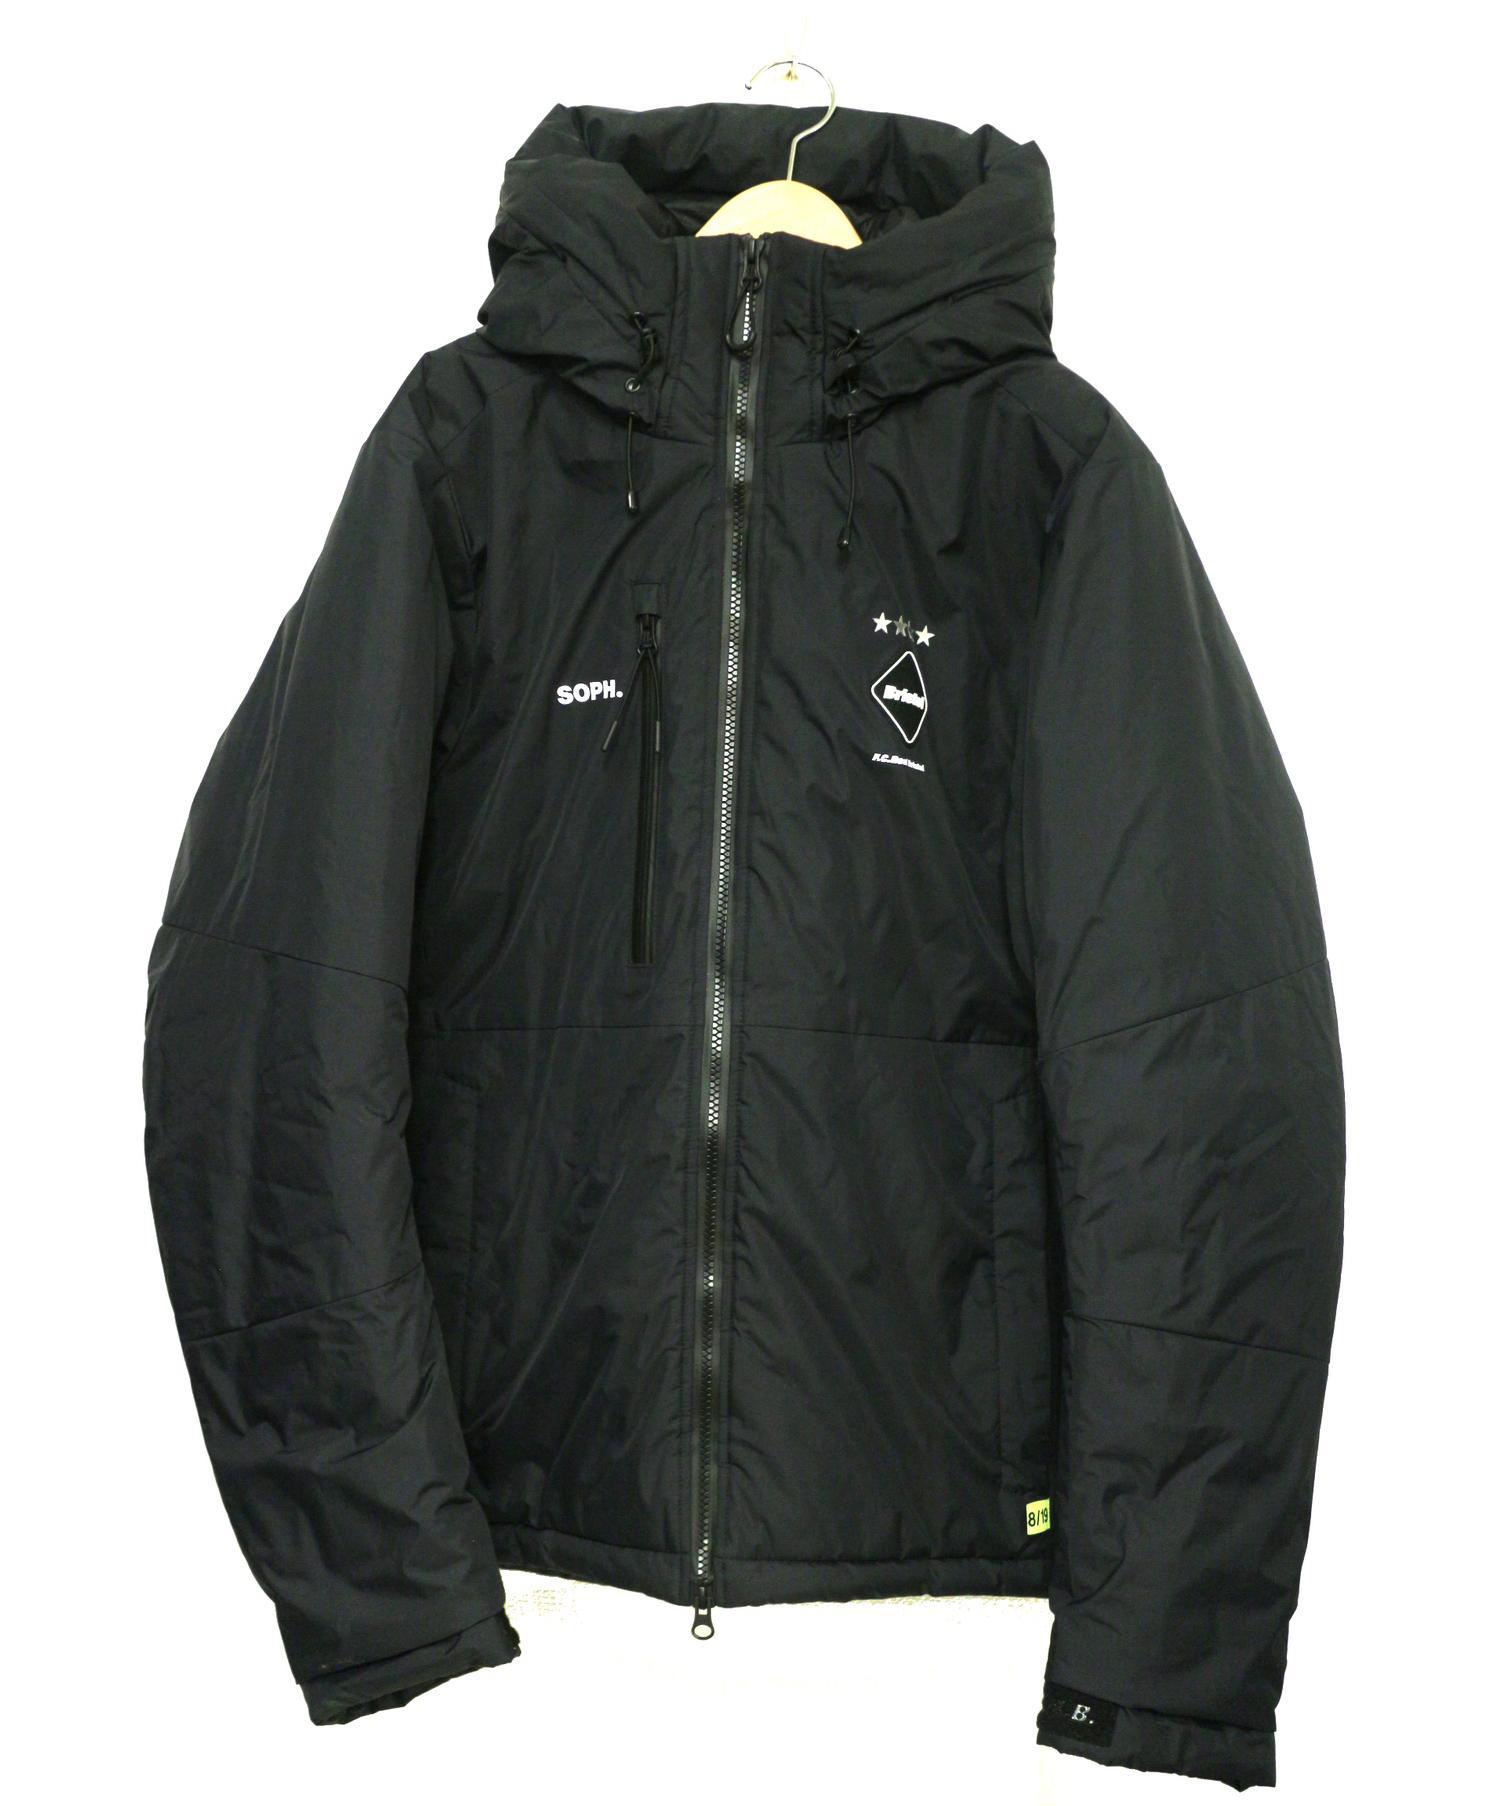 通販限定商品 F.C.Real Bristol FCRB PDK jacket 黒Sサイズ - unleadedwriting.com